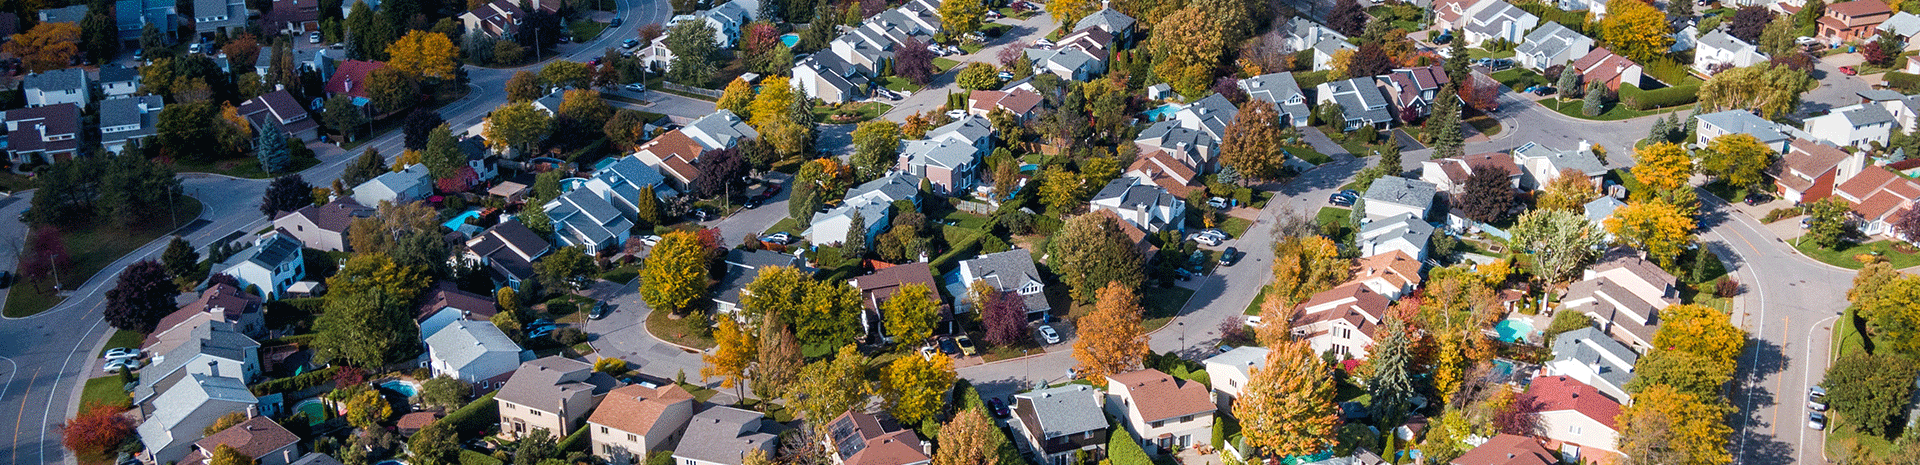 residential real estate in neighborhood